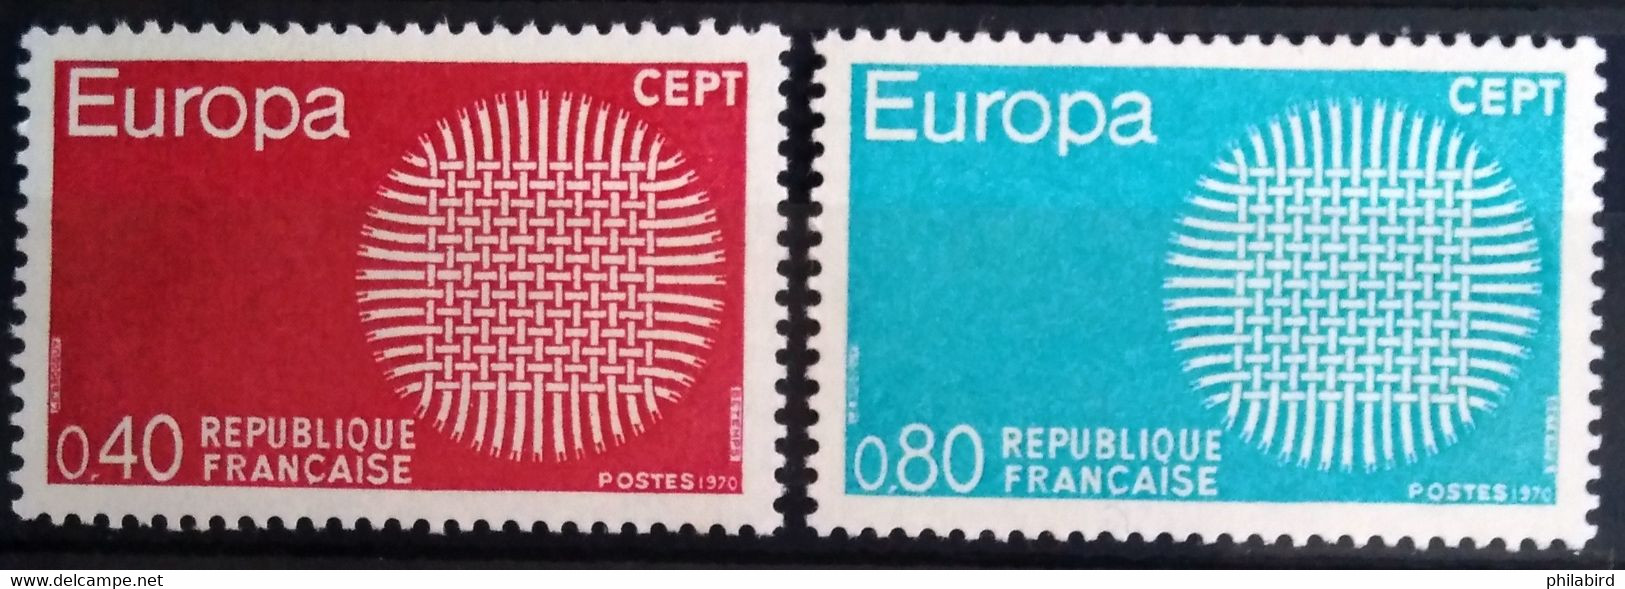 EUROPA 1970 - FRANCE                    N° 1637/1638                       NEUF** - 1970